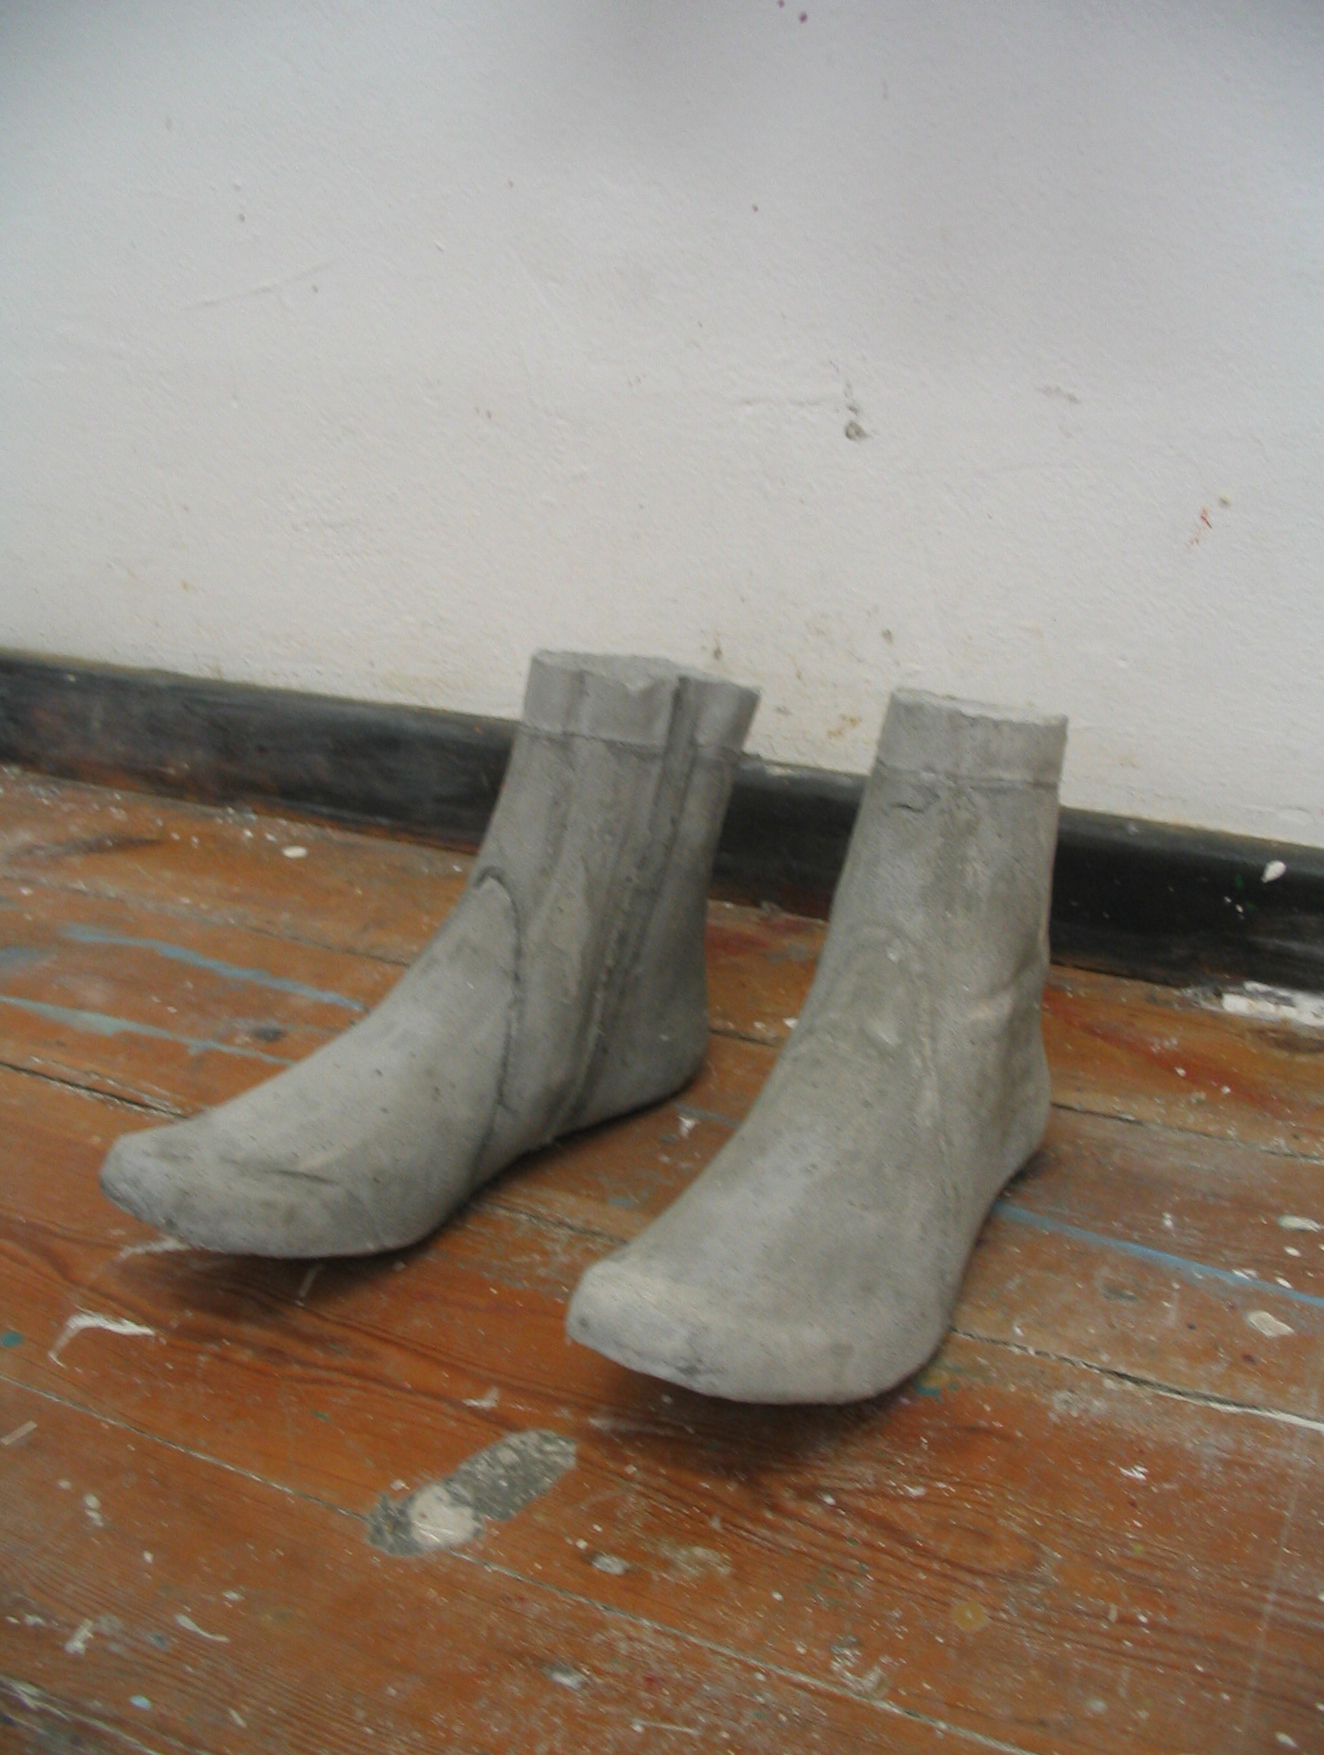 02 Boots, 2008, concrete